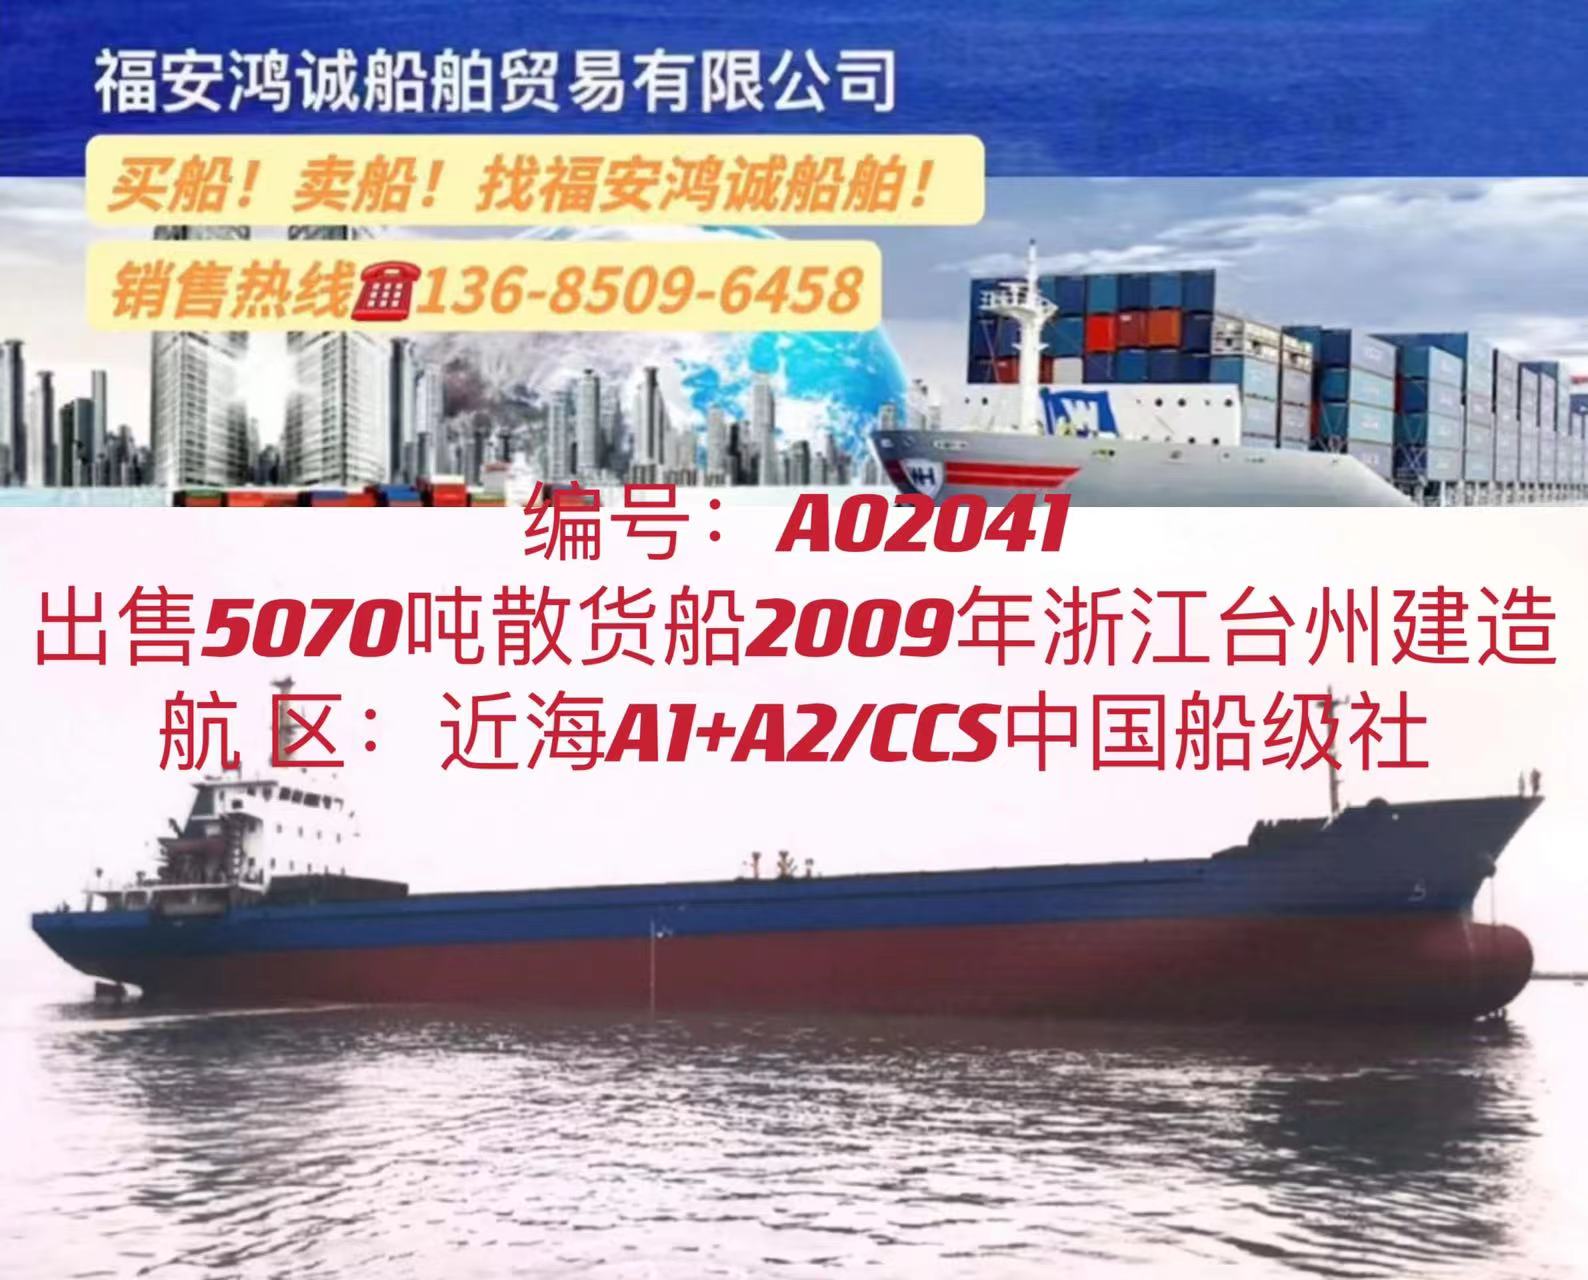 出售5070吨散货船 2009年10月浙江台州建造/